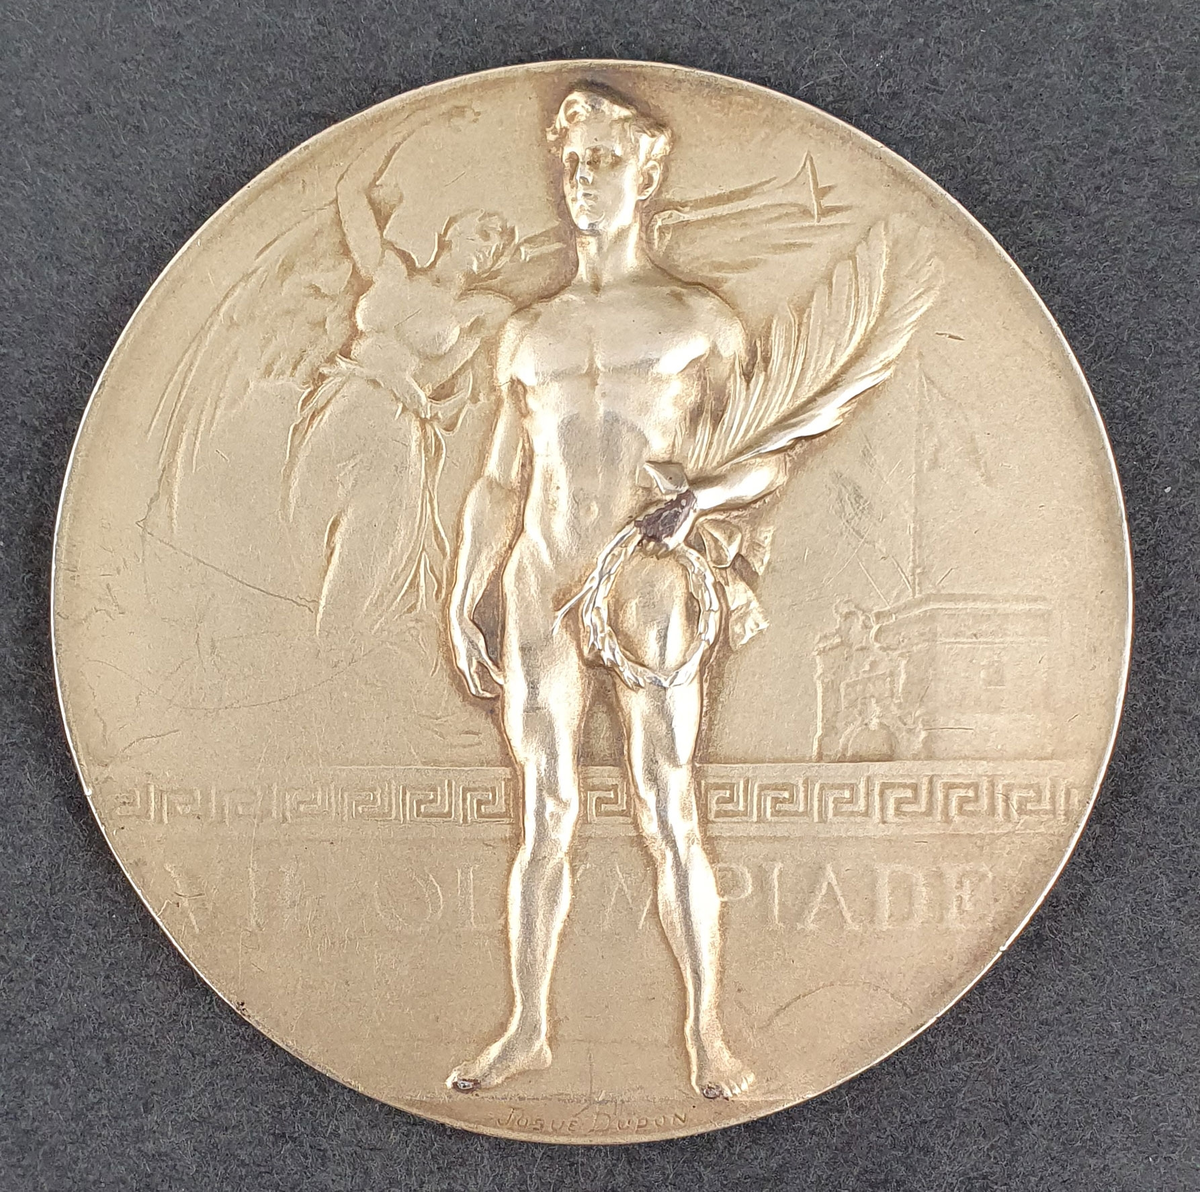 Gullmedalje fra Antwerpen 1920. På den ene siden vises en seirende atlet med krans og palmeblad i hånden. På den andre siden vises Brabo-monumentet i Antwerpen i forgrunnen og havnen i bakgrunnen.